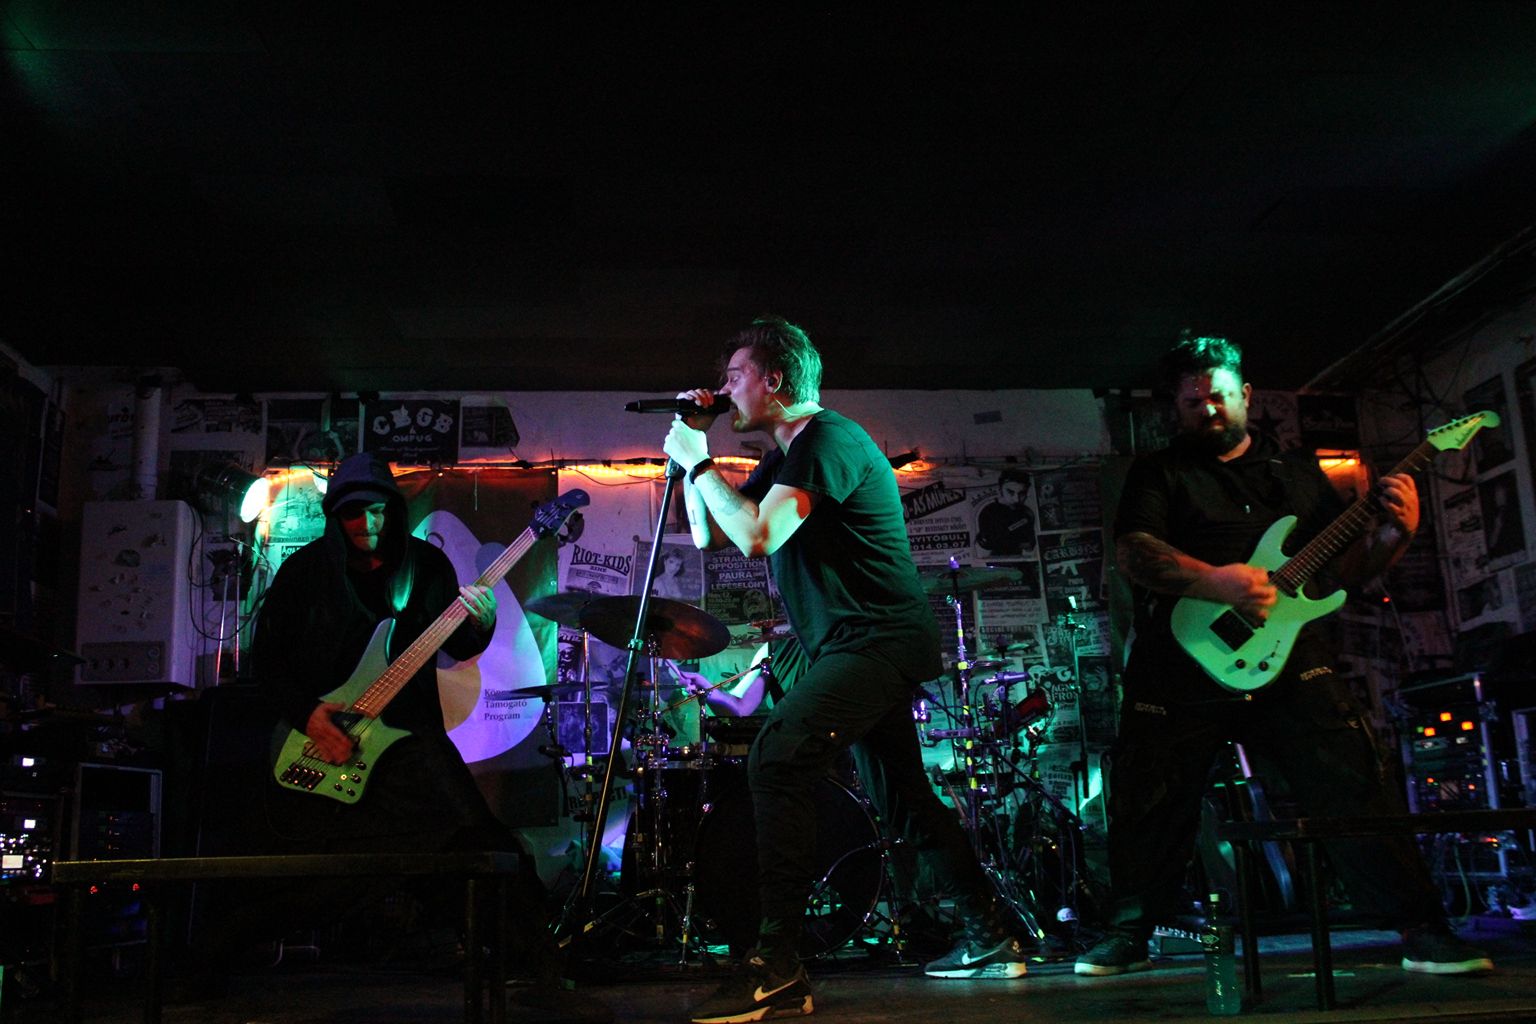 Mindgate - Új klippel jelentkezett a fővárosi modern metal/metalcore zenekar: 'Feel'